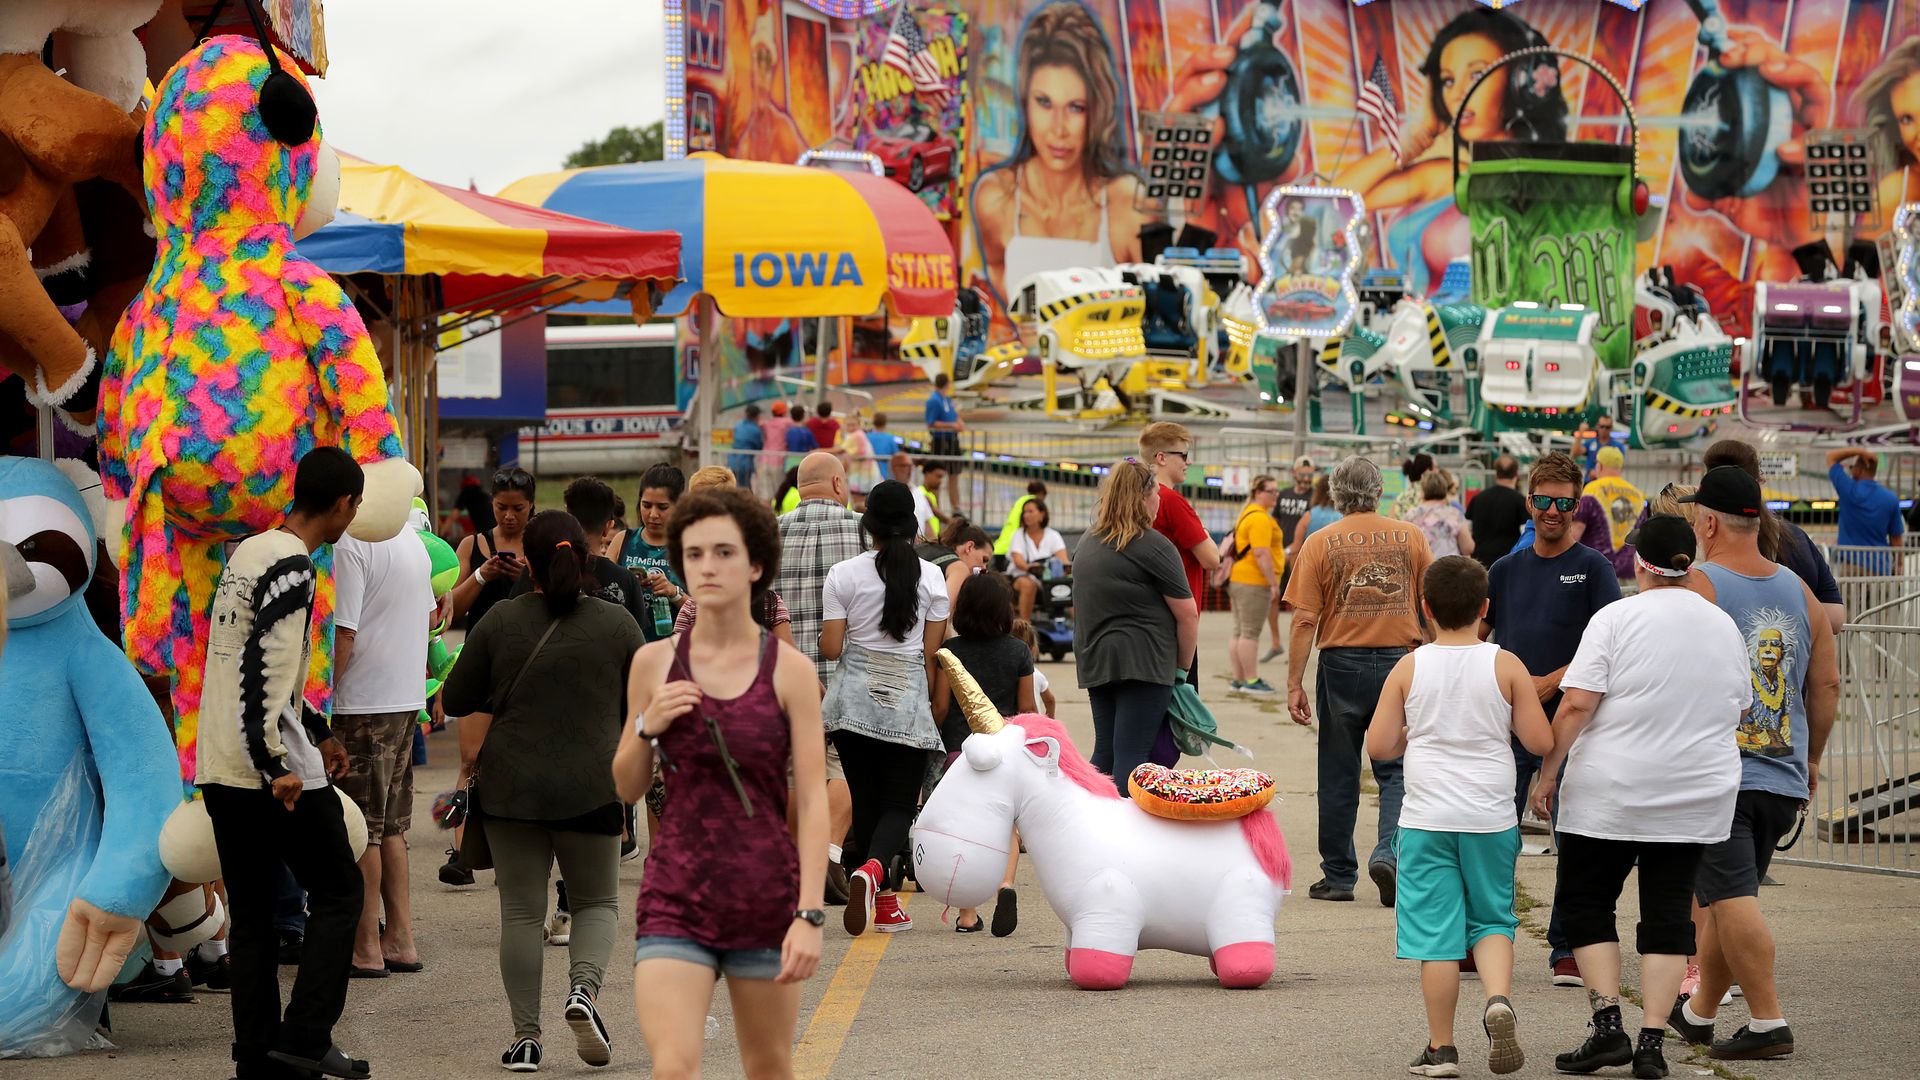 The Iowa state fair.